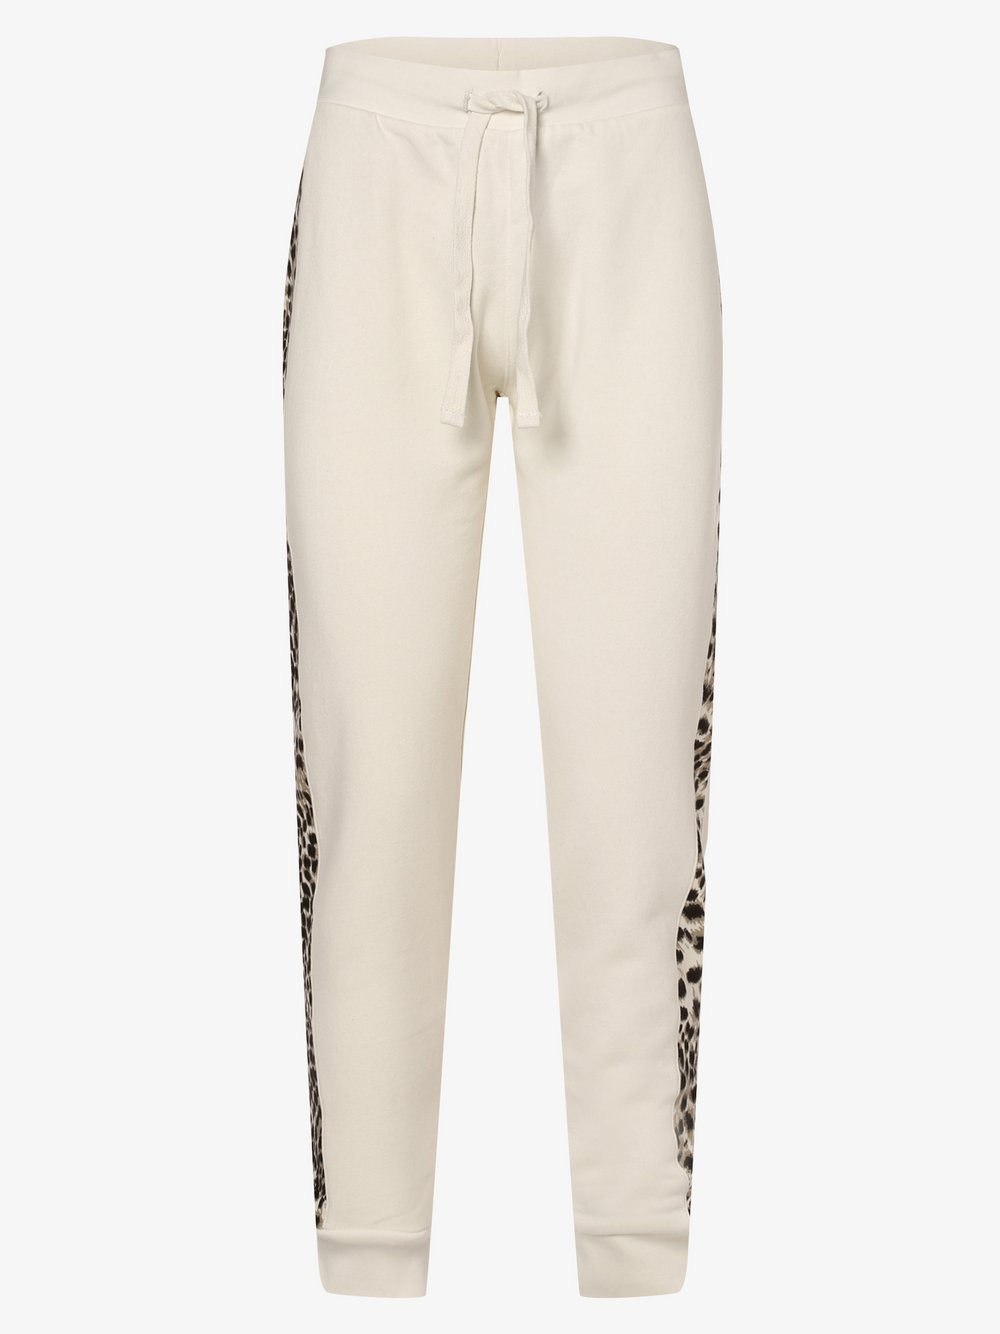 Key Largo - Damskie spodnie dresowe, biały